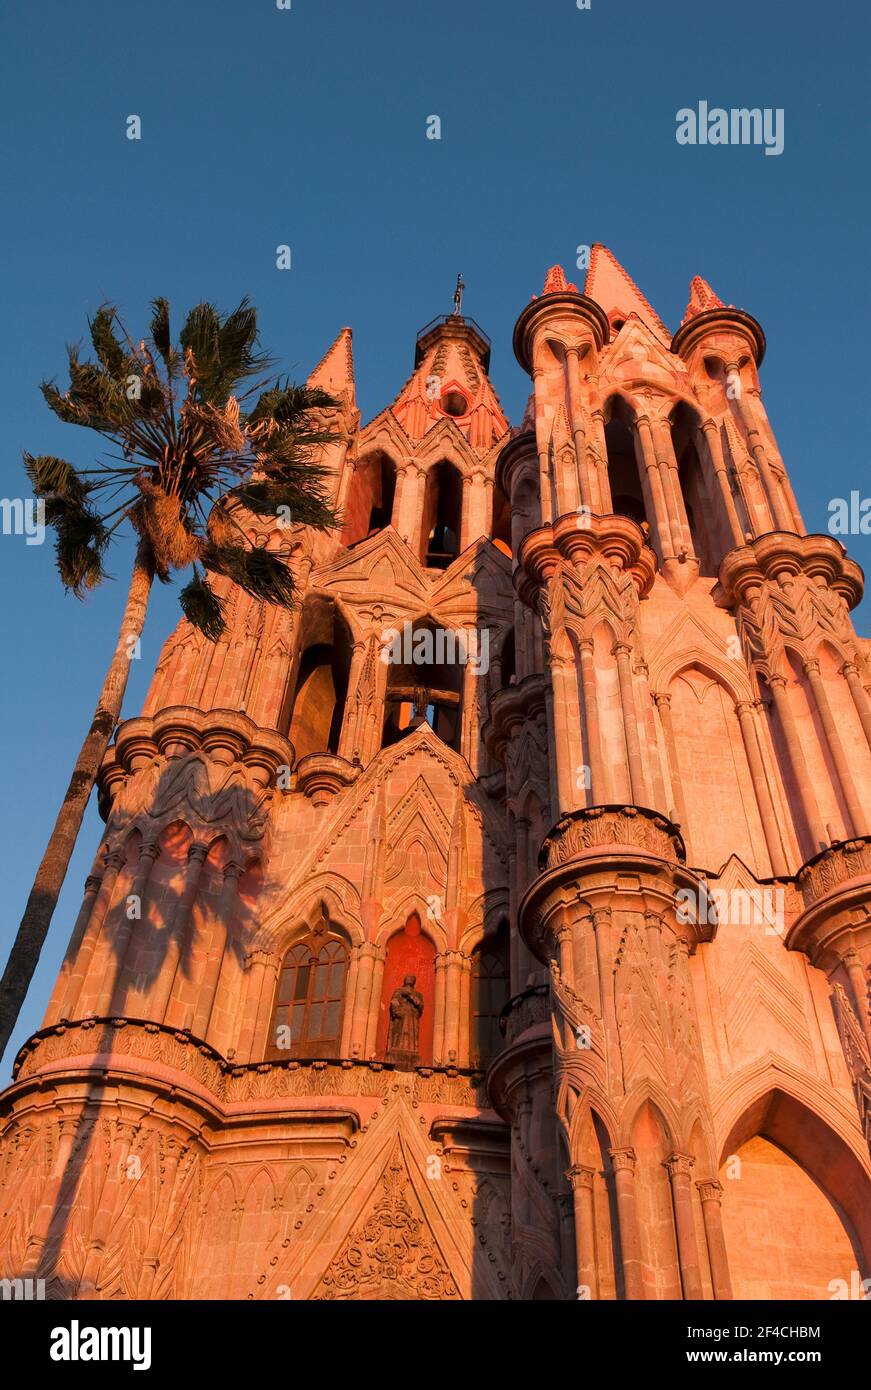 Parroquia de San Miguel Arcangel, die berühmte Kathedrale von San Miguel de Allende, Guanajuato, Mexiko. Stockfoto